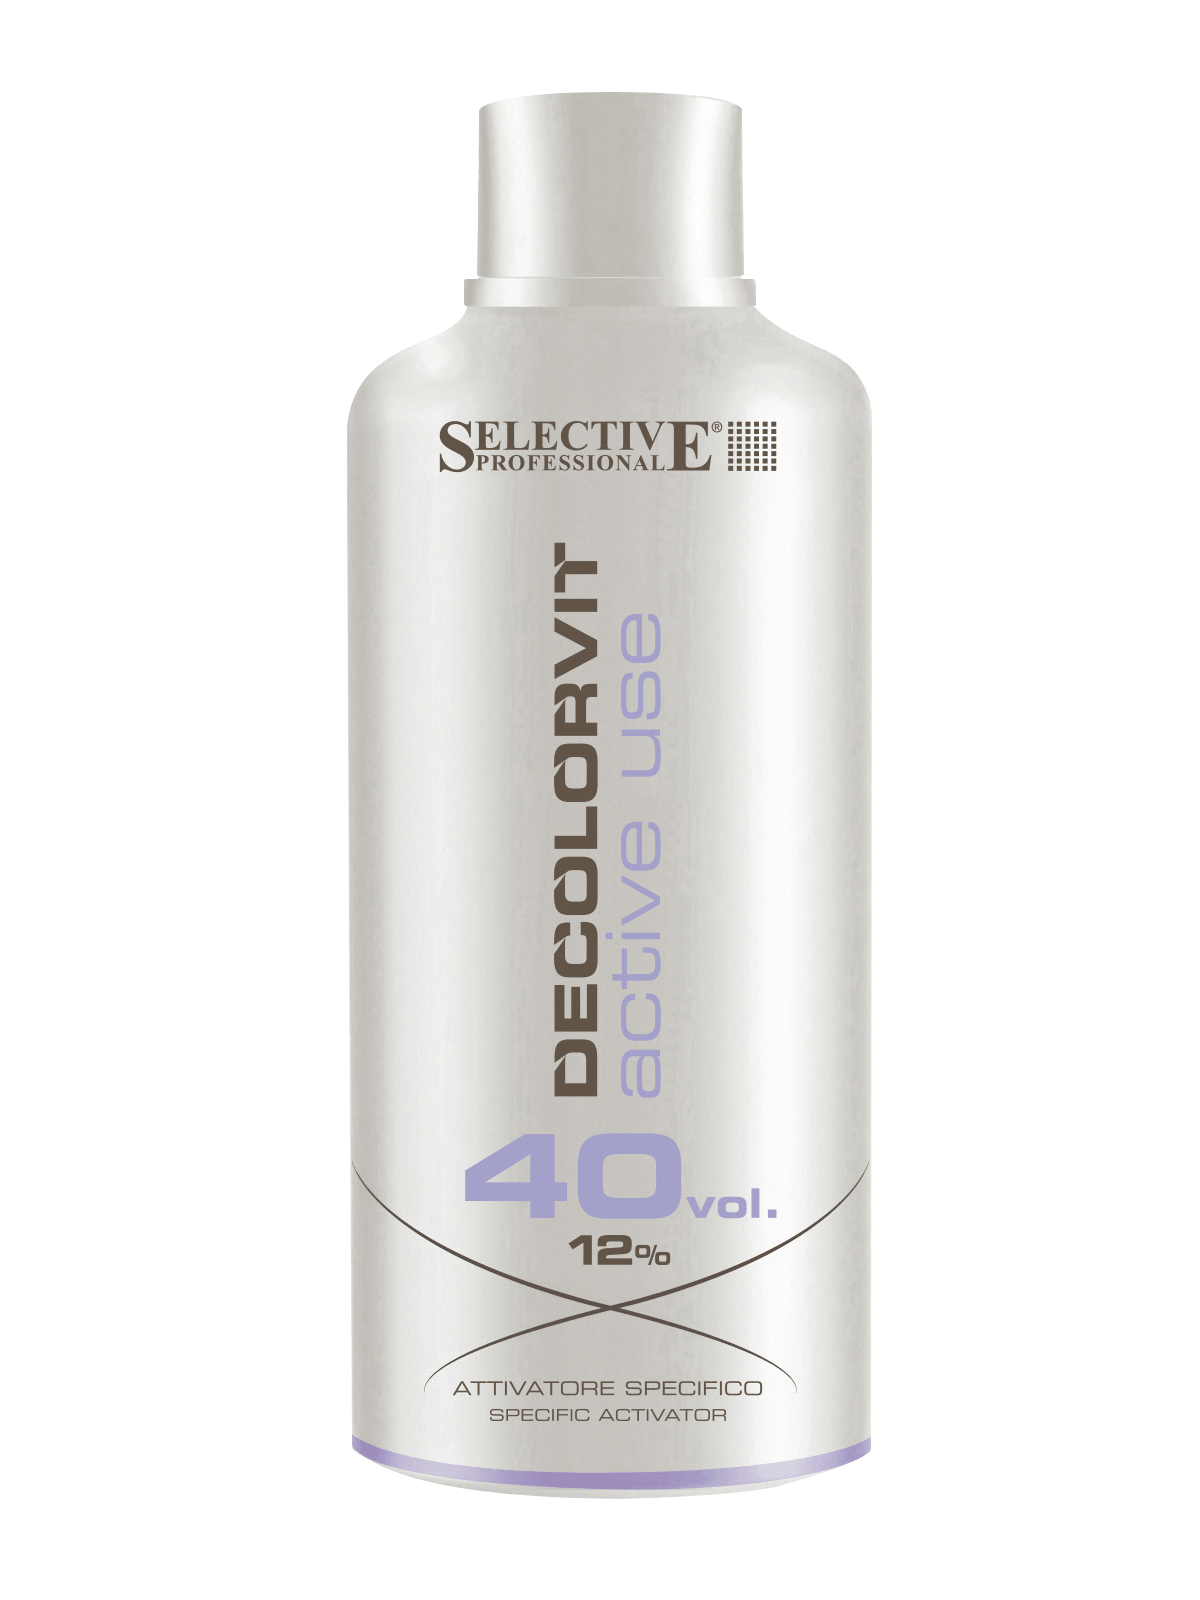 Окислители для волос:  SELECTIVE PROFESSIONAL -  Специальный активатор Decolorvit Active Use 12% (750 мл)